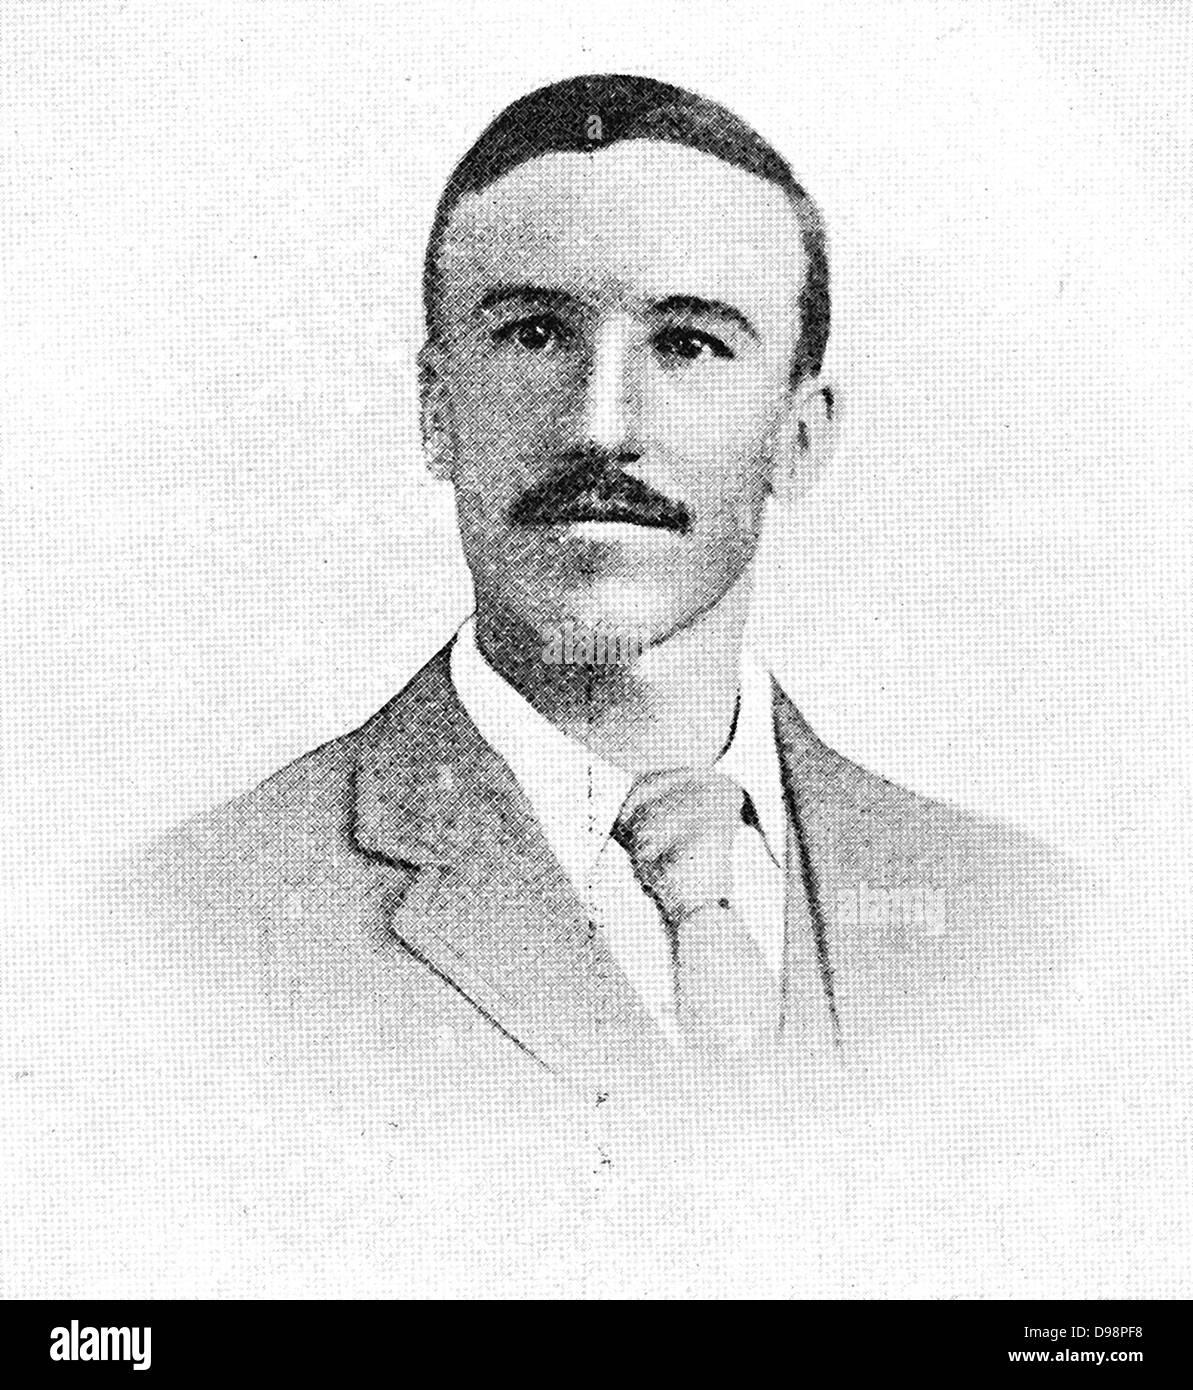 Daniël Johannes Stephanus Theron, (9 maggio 1872 - 5 settembre 1900), spesso chiamato Danie Theron, nacque a Tulbagh, la colonia del capo, Foto Stock